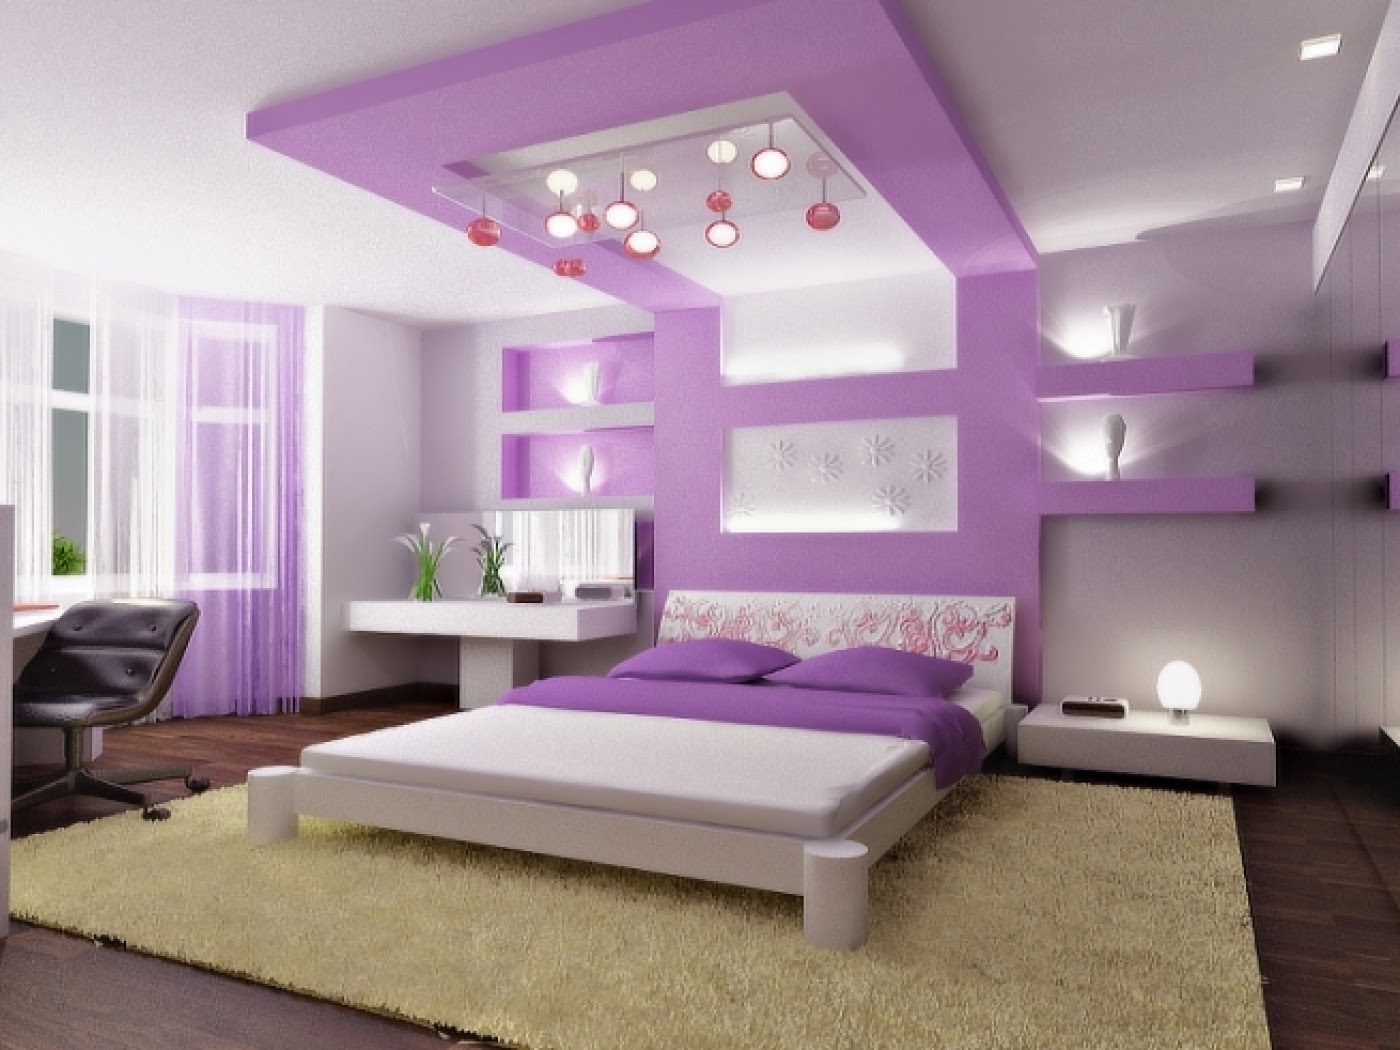 Wedo thiết kế nhà đẹp với sắc màu tím